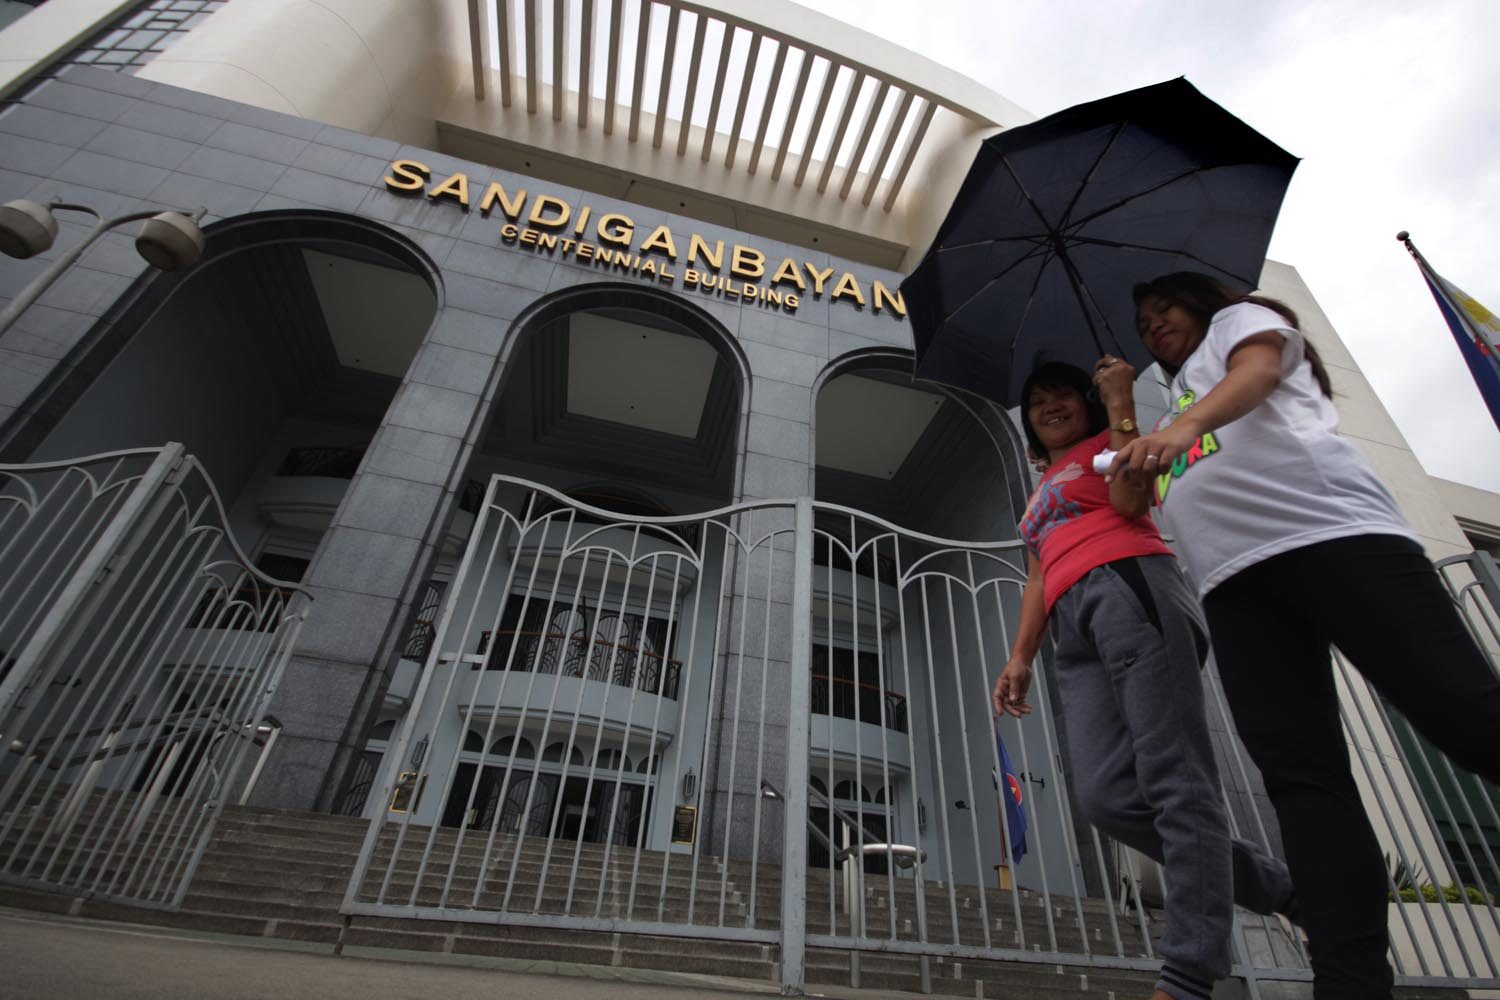 Sandiganbayan menolak kasus suap lainnya karena ditunda